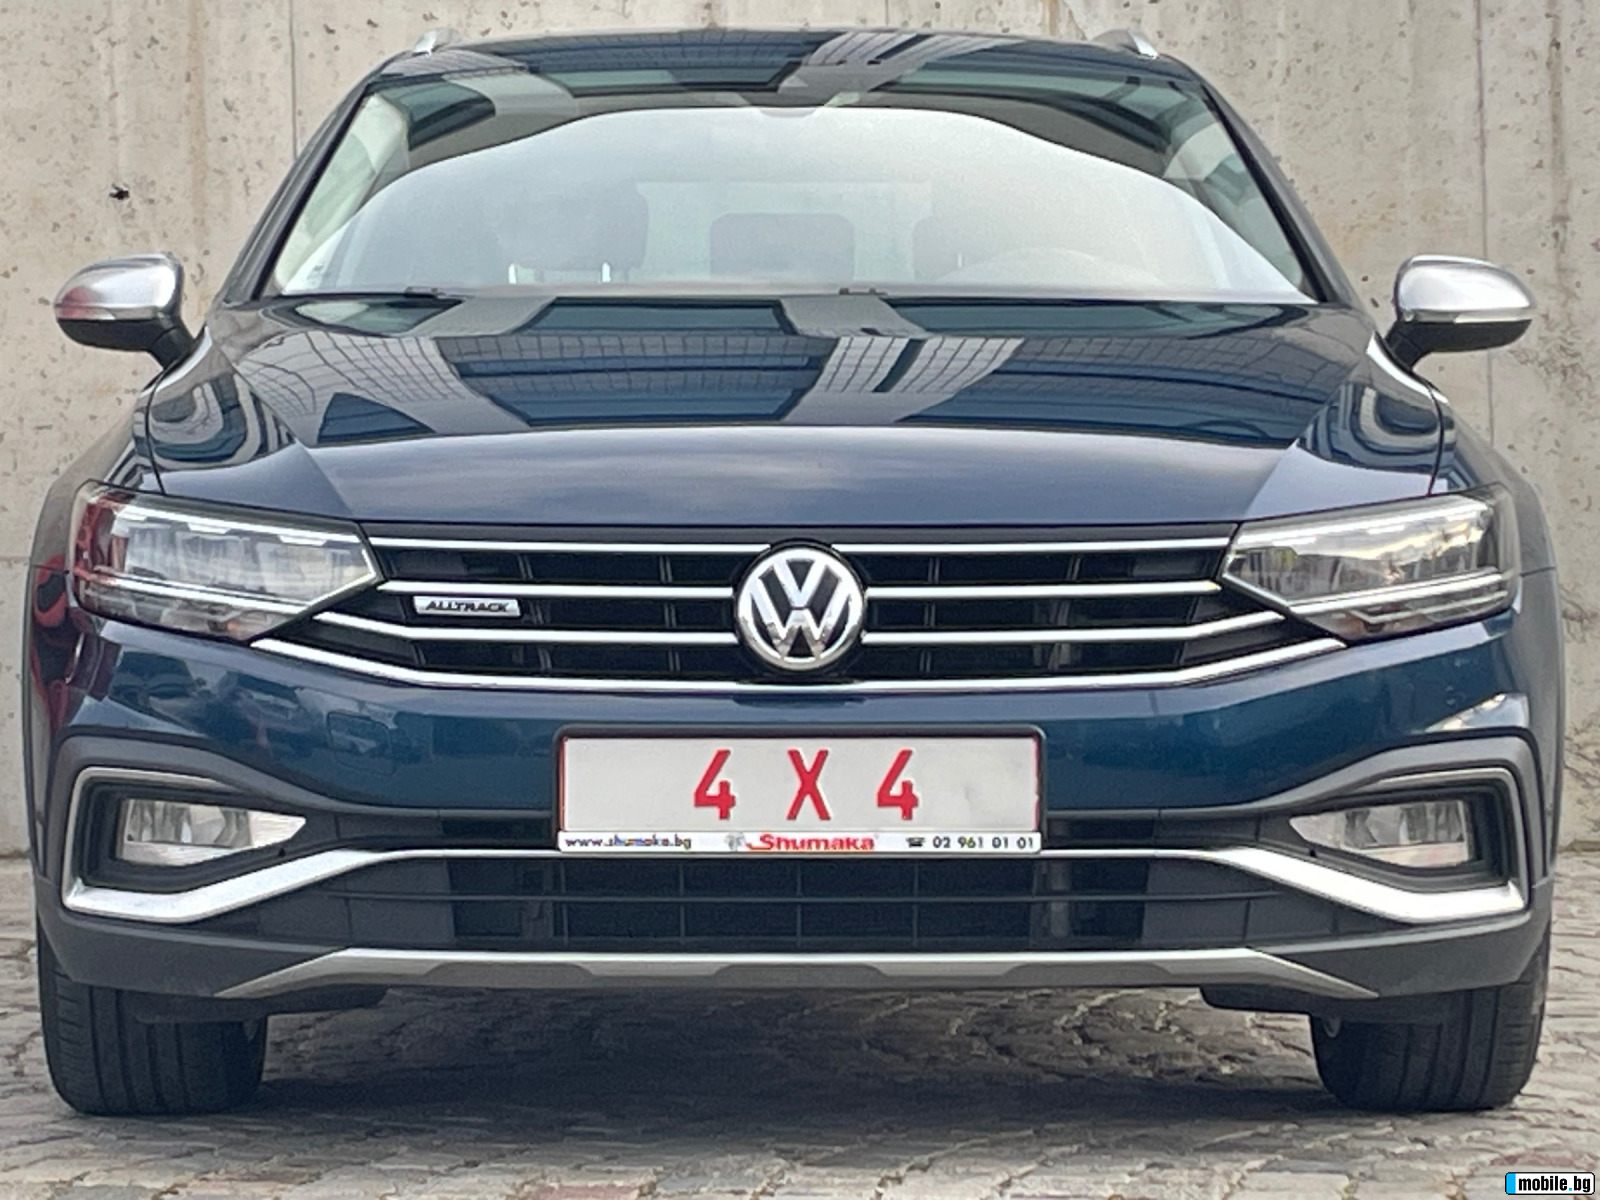 VW Passat 4x4-2.0TDI-190ps.   !! | Mobile.bg   1